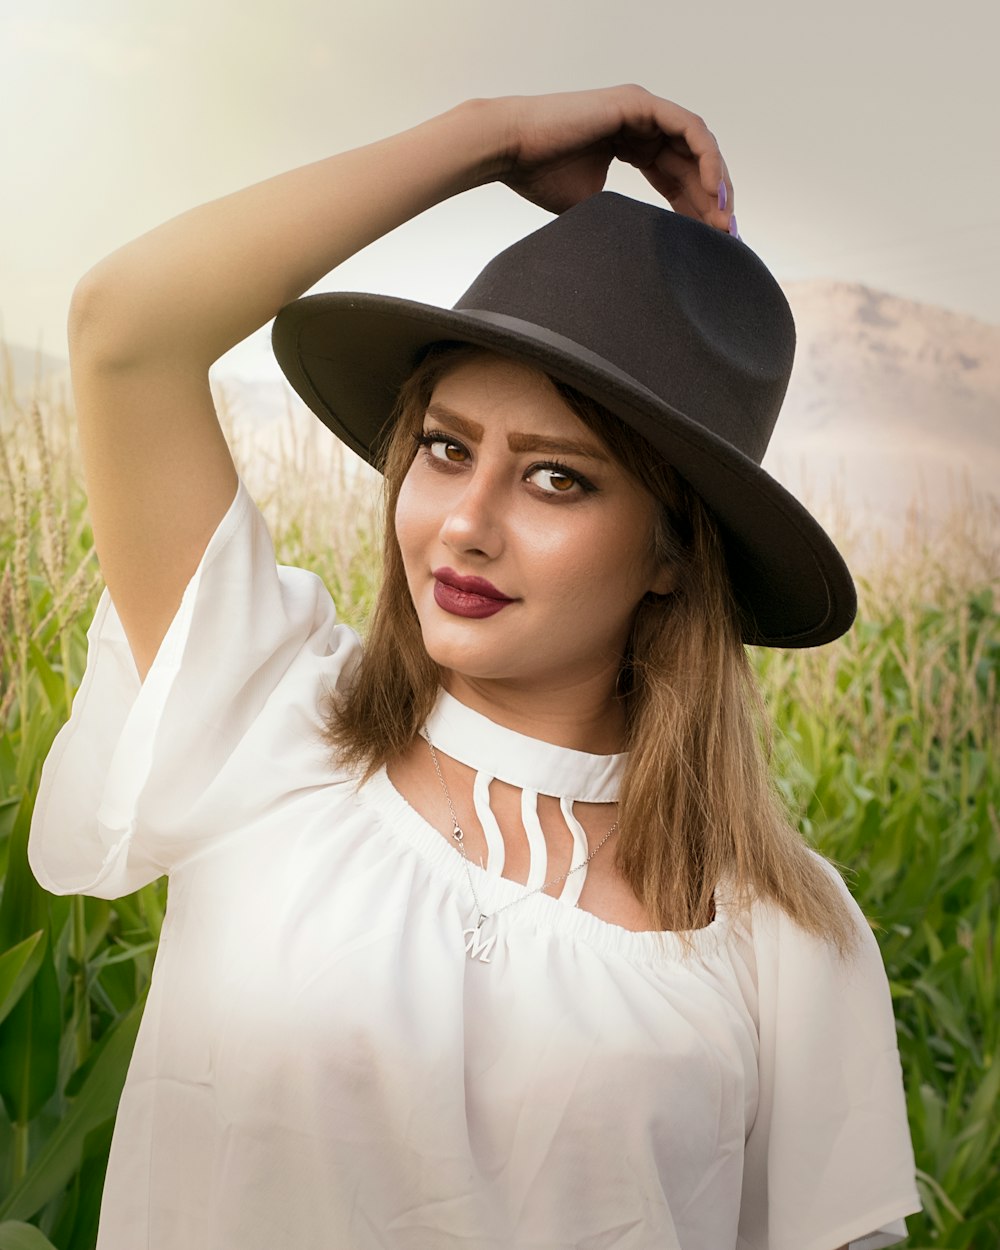 woman in white shirt wearing black fedora hat